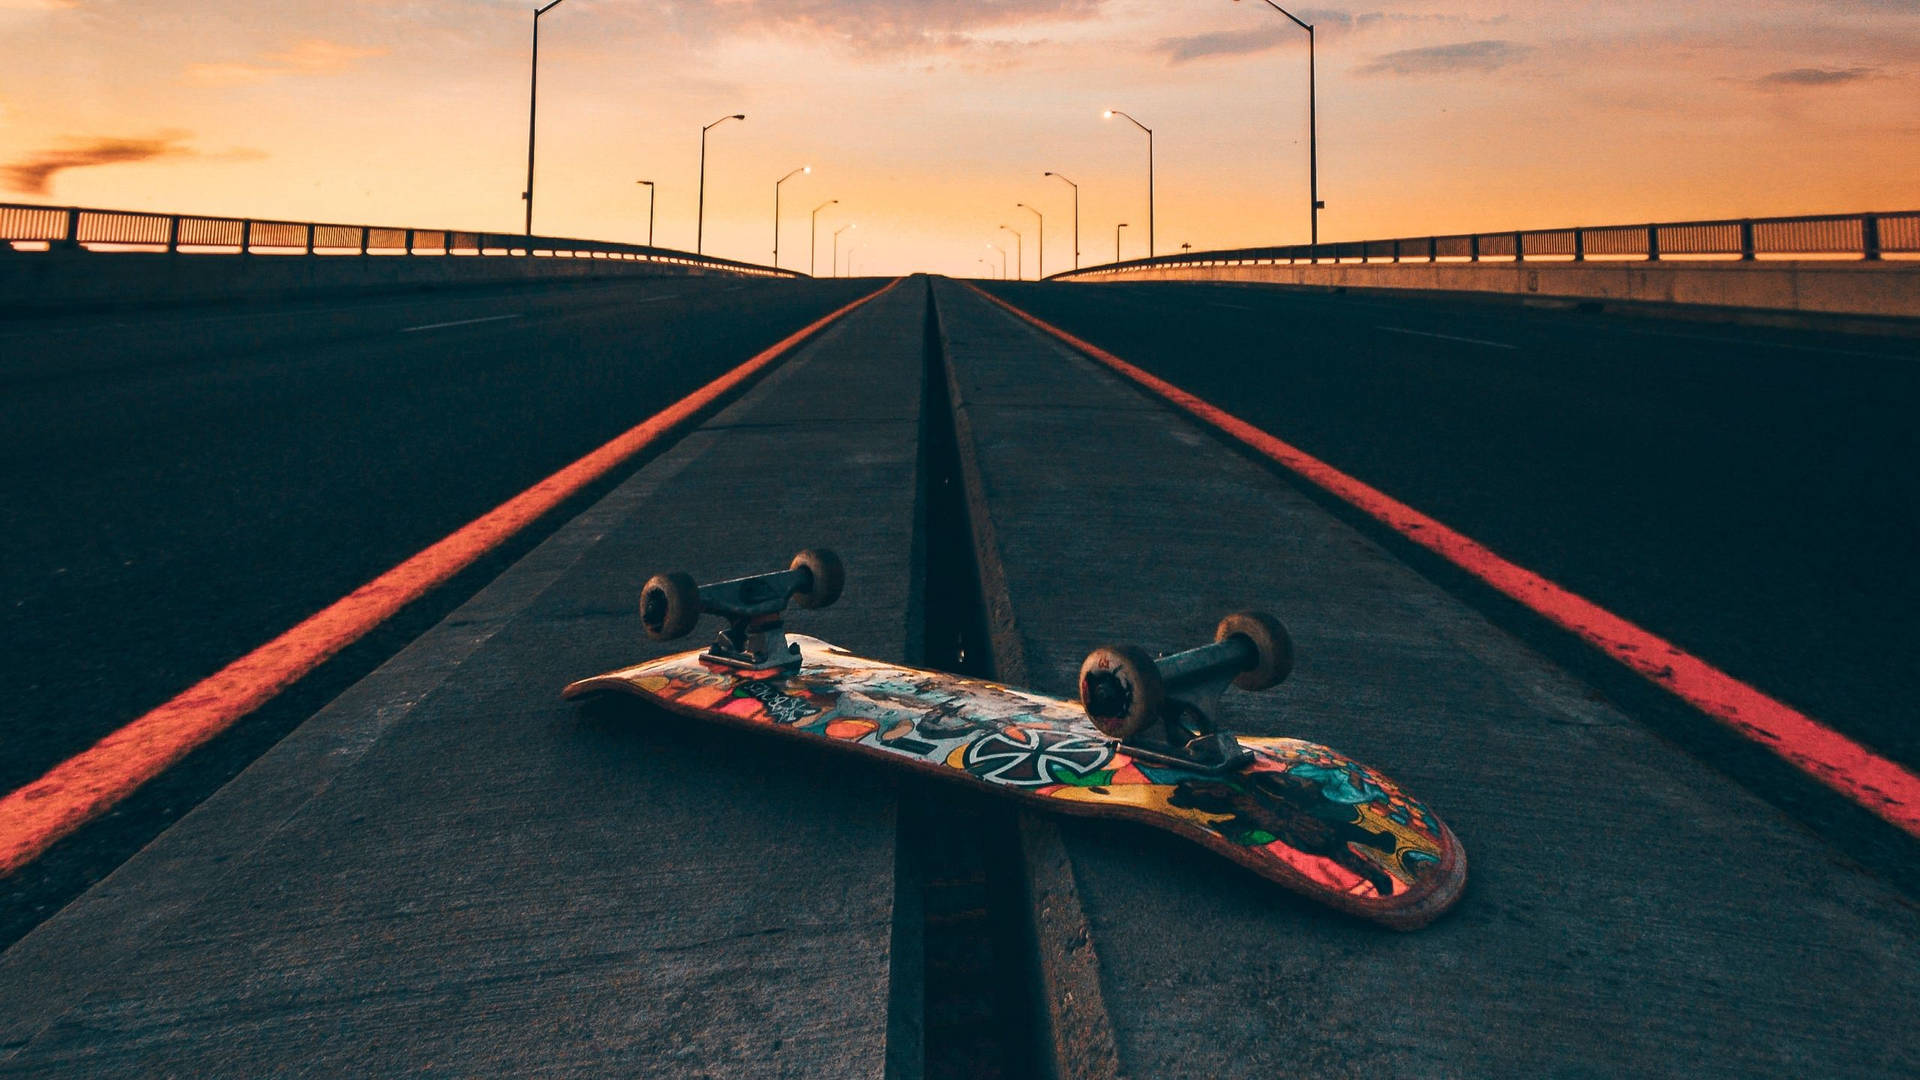 Flipped Skateboard On Road At Sunset Skater Aesthetic Wallpaper